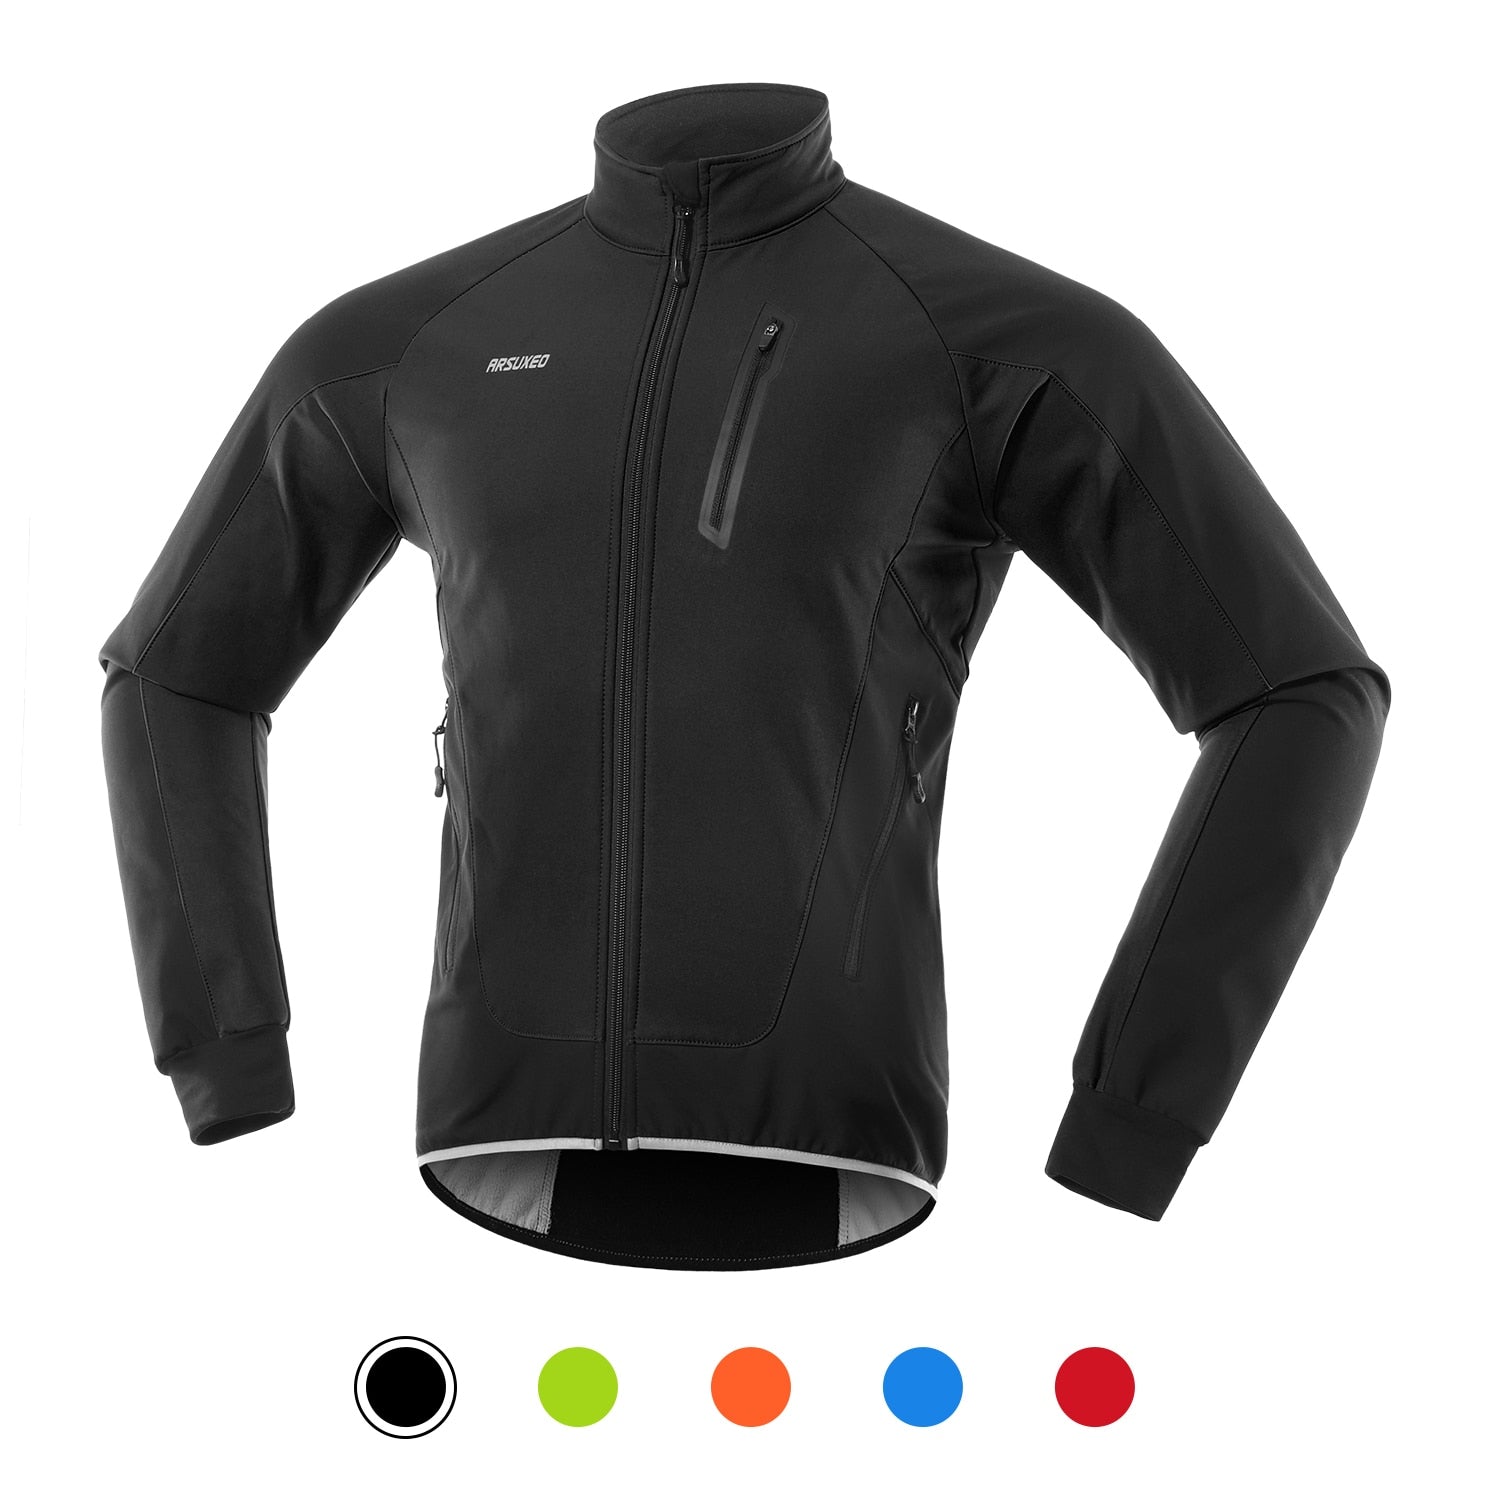 ARSUXEO Hi-Viz Men's Winter Waterproof/Windproof Thermal Fleece-lined Cycling Jacket - Reflective/Black